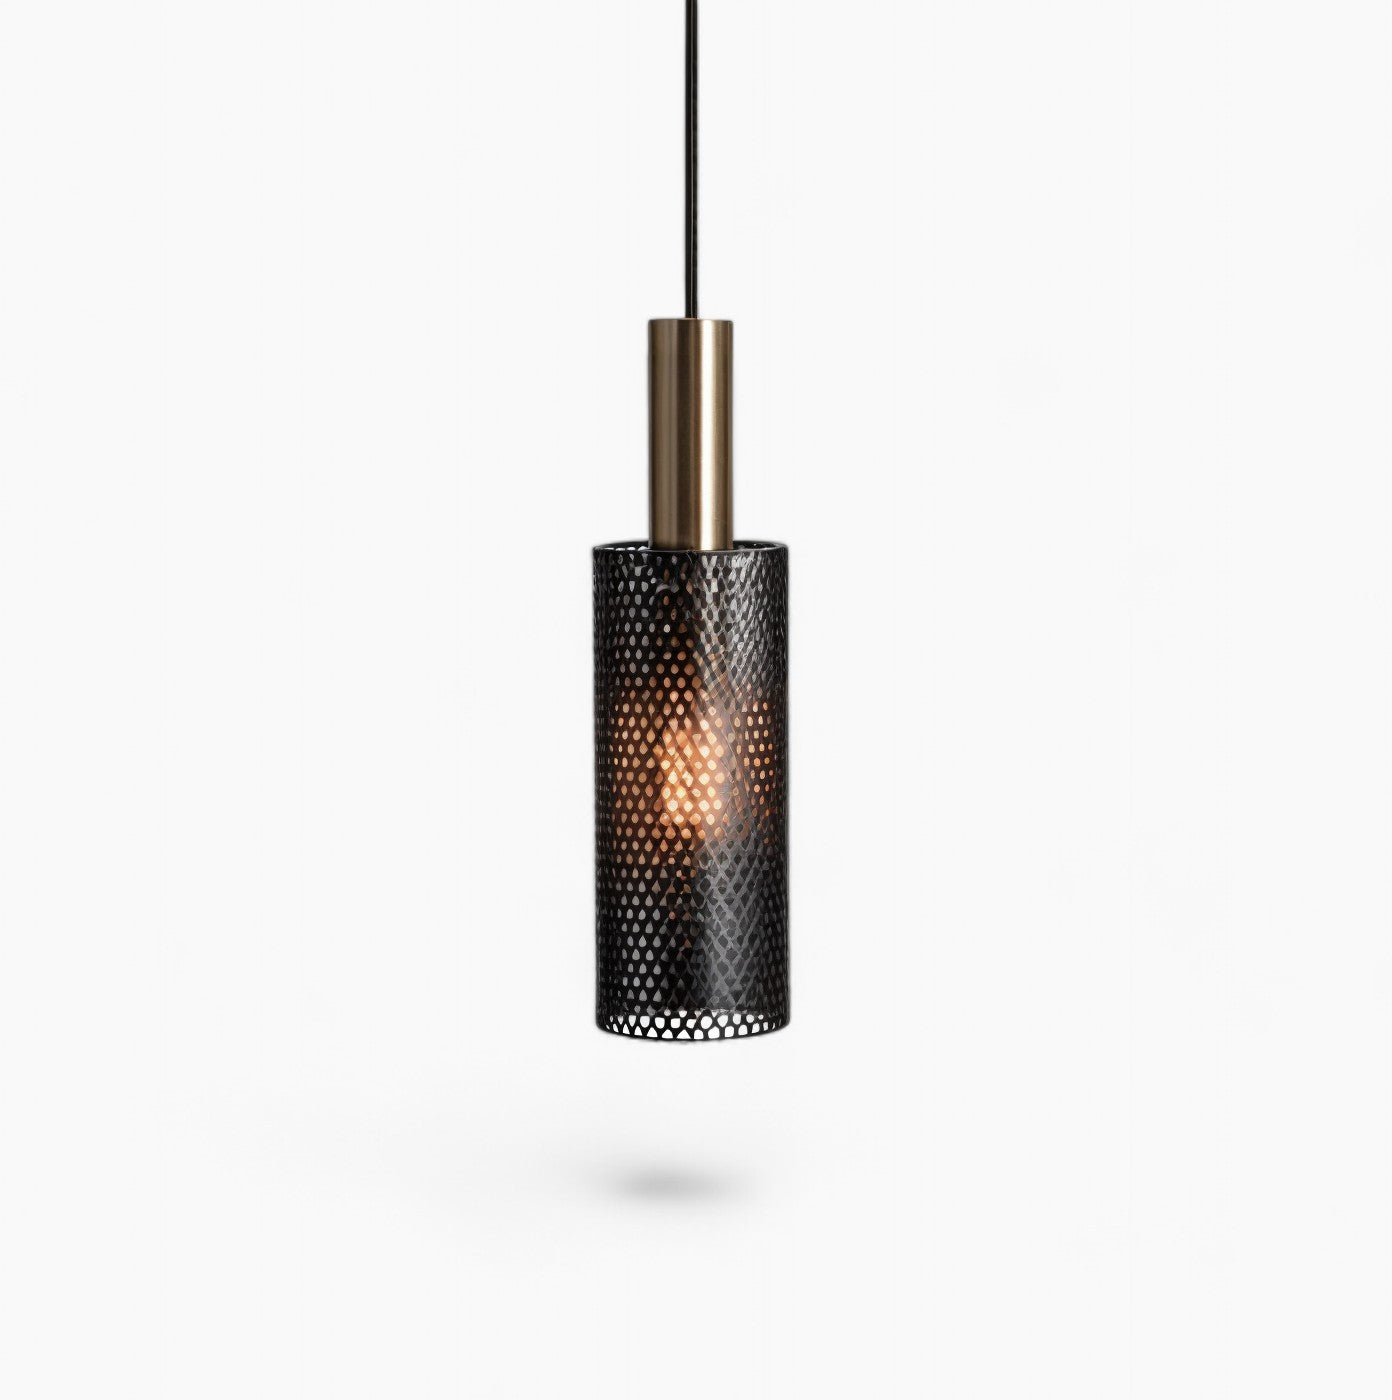 Moderne Pendelleuchte - Elegantes Metalldesign, erhältlich in Schwarz/Weiß, E27 LED-Lampe, verstellbares Kabel, ideal für Küche, Esszimmer, Wohnzimmer, Schlafzimmer